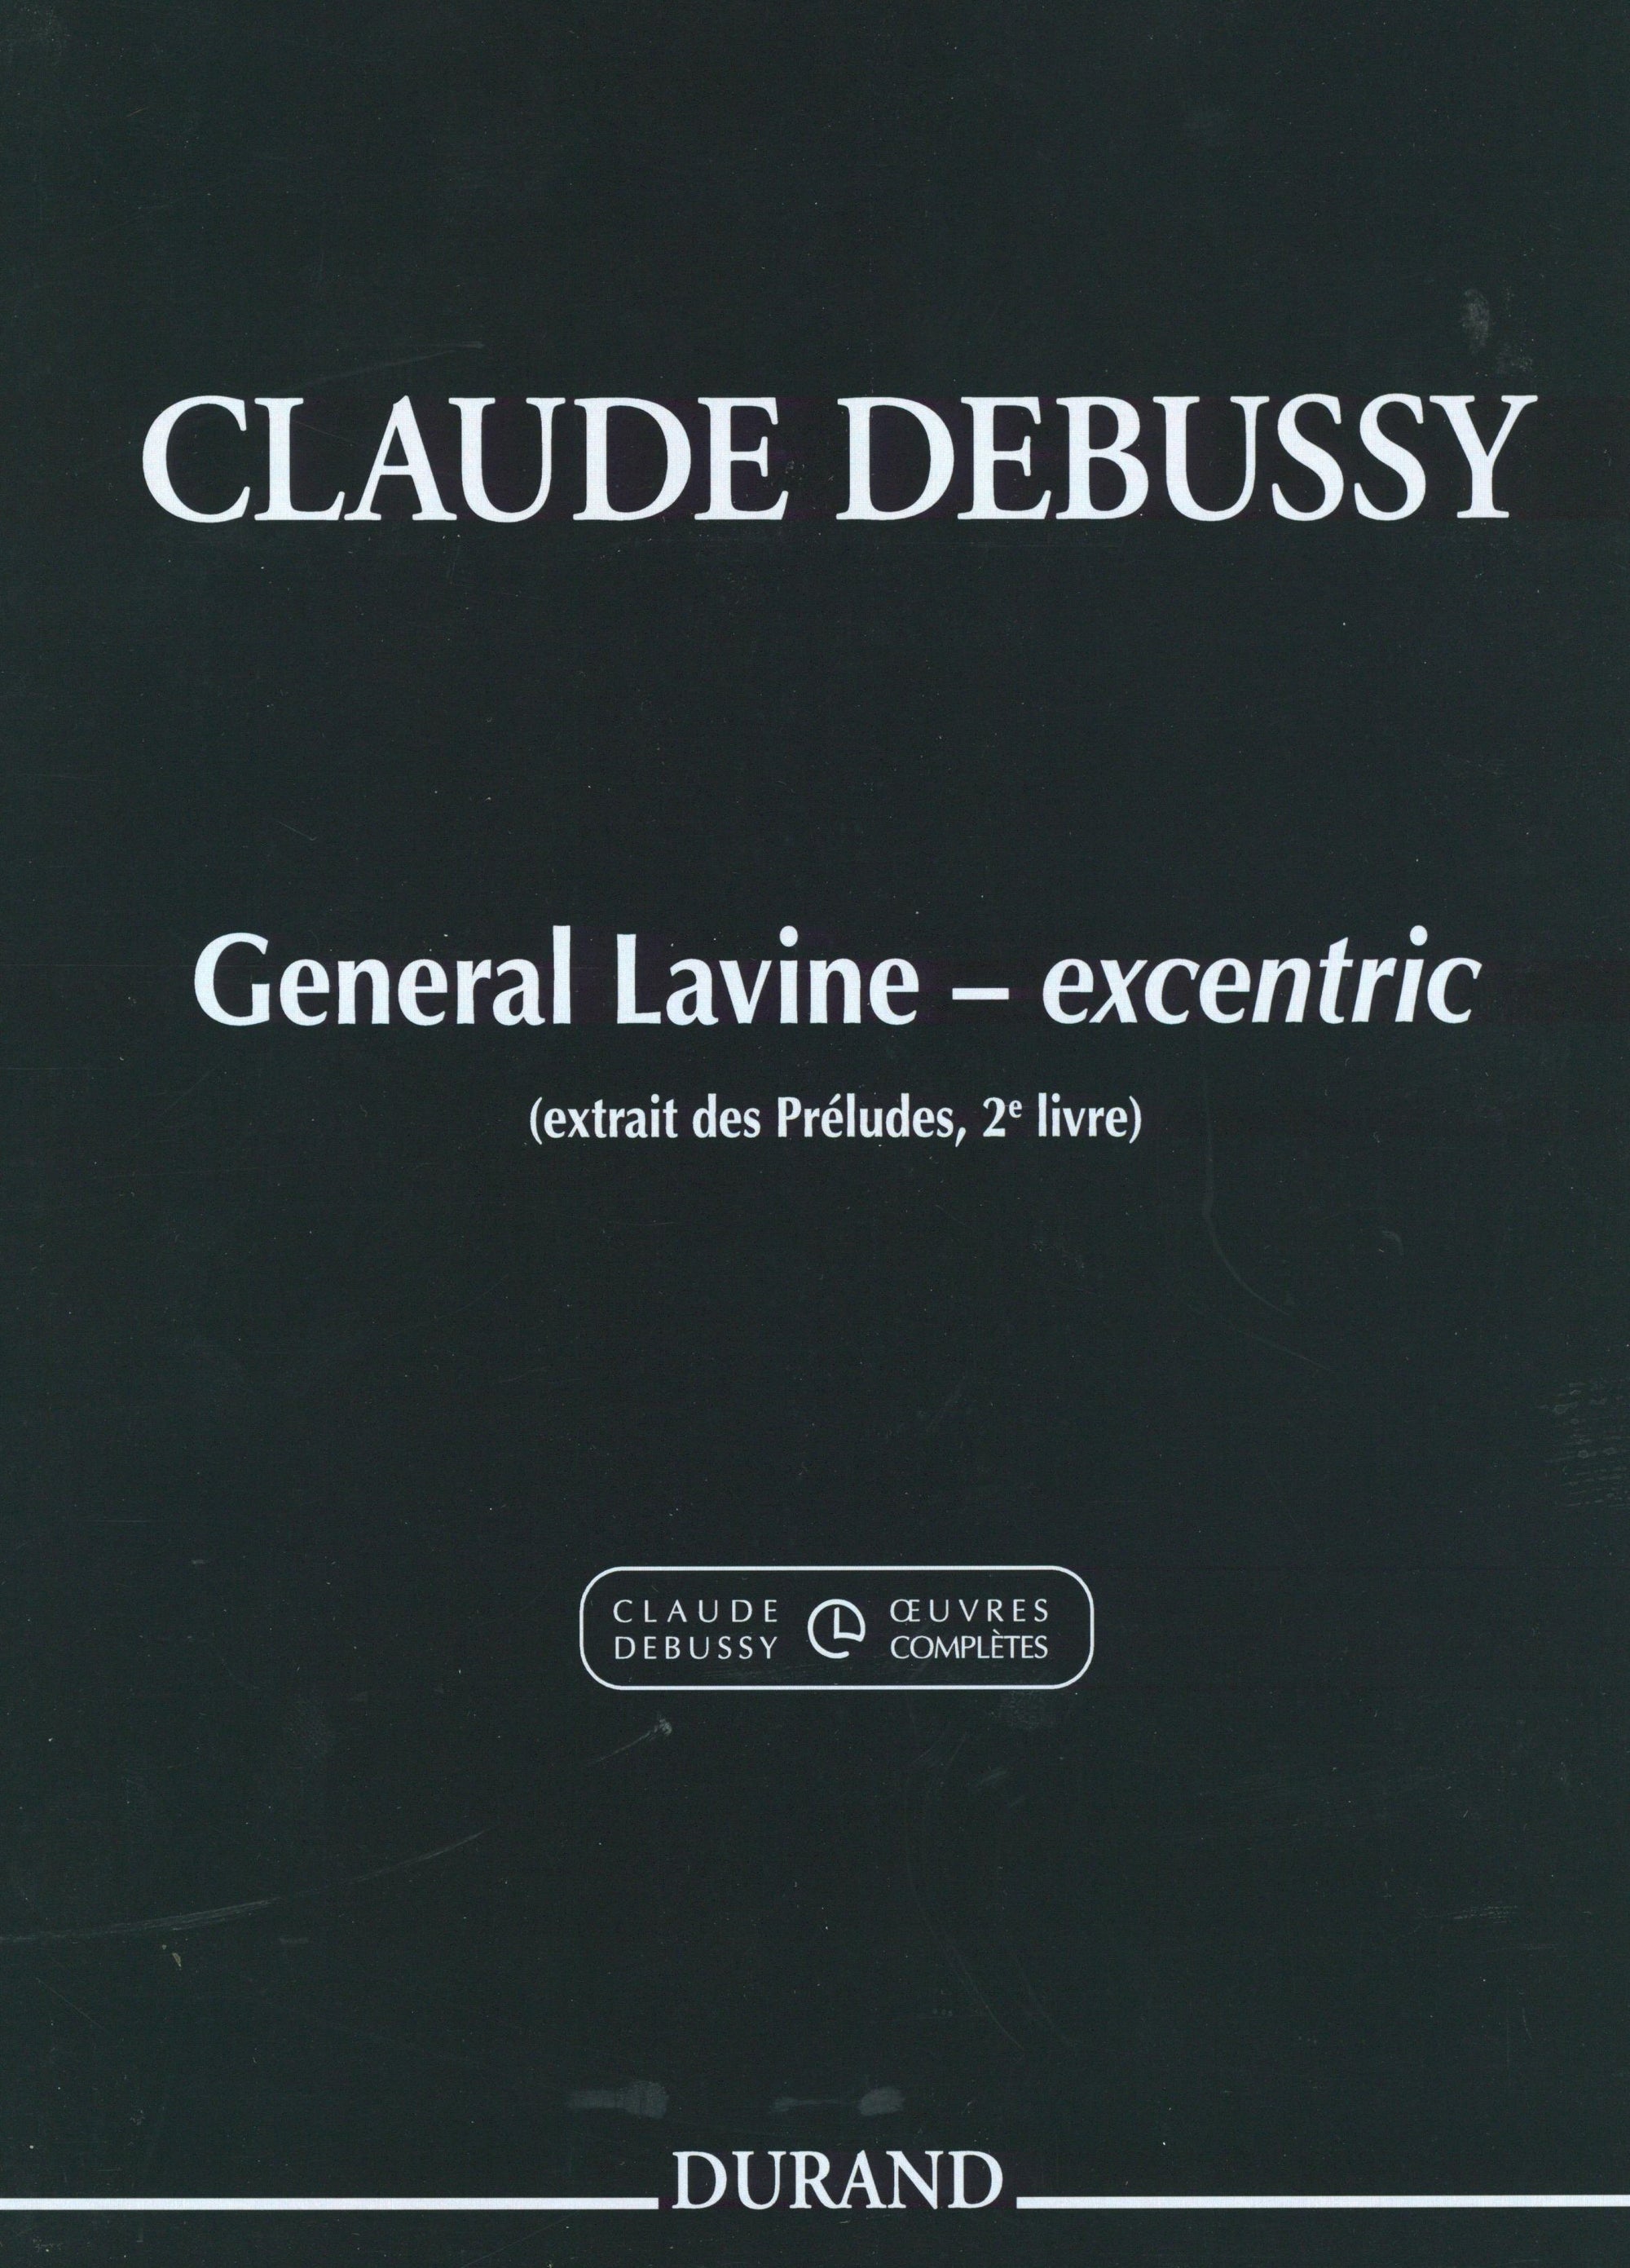 Debussy: Général Lavine – eccentric